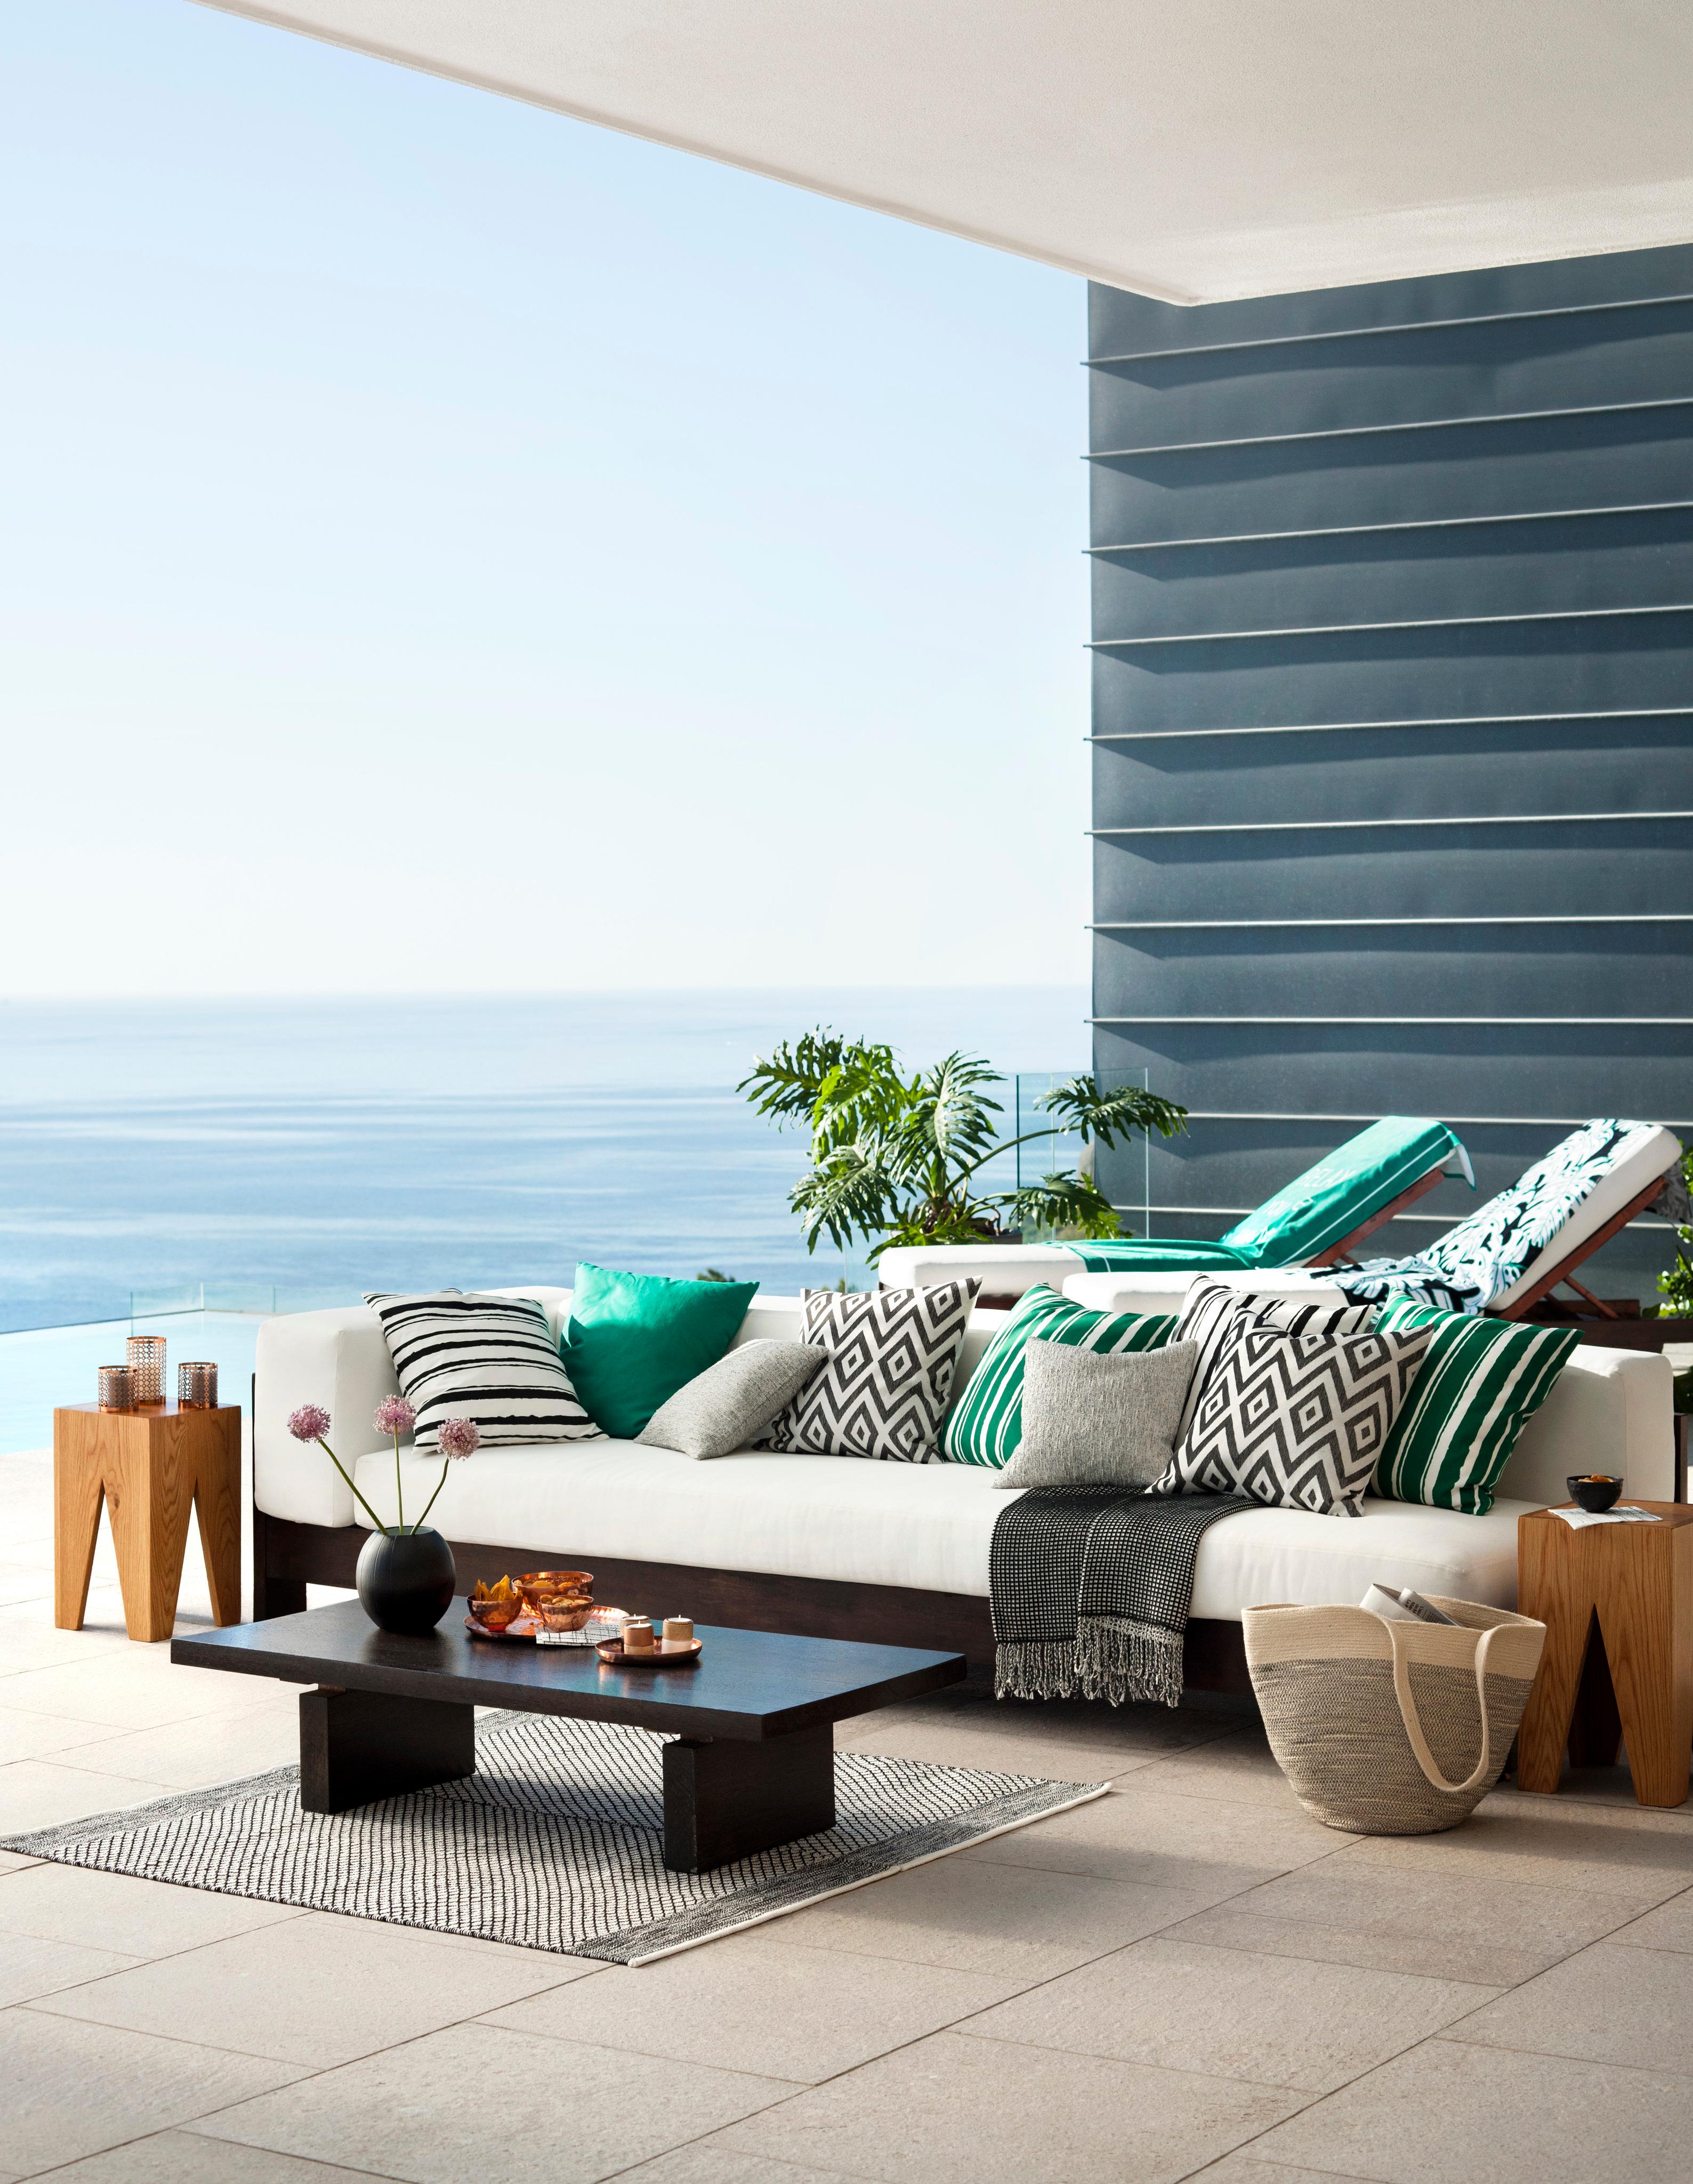 Outdoor-Sofa mit Dekokissen #sitzecke #liegestuhl #balkonaccessoire #sitzeckebalkon ©H&M Home